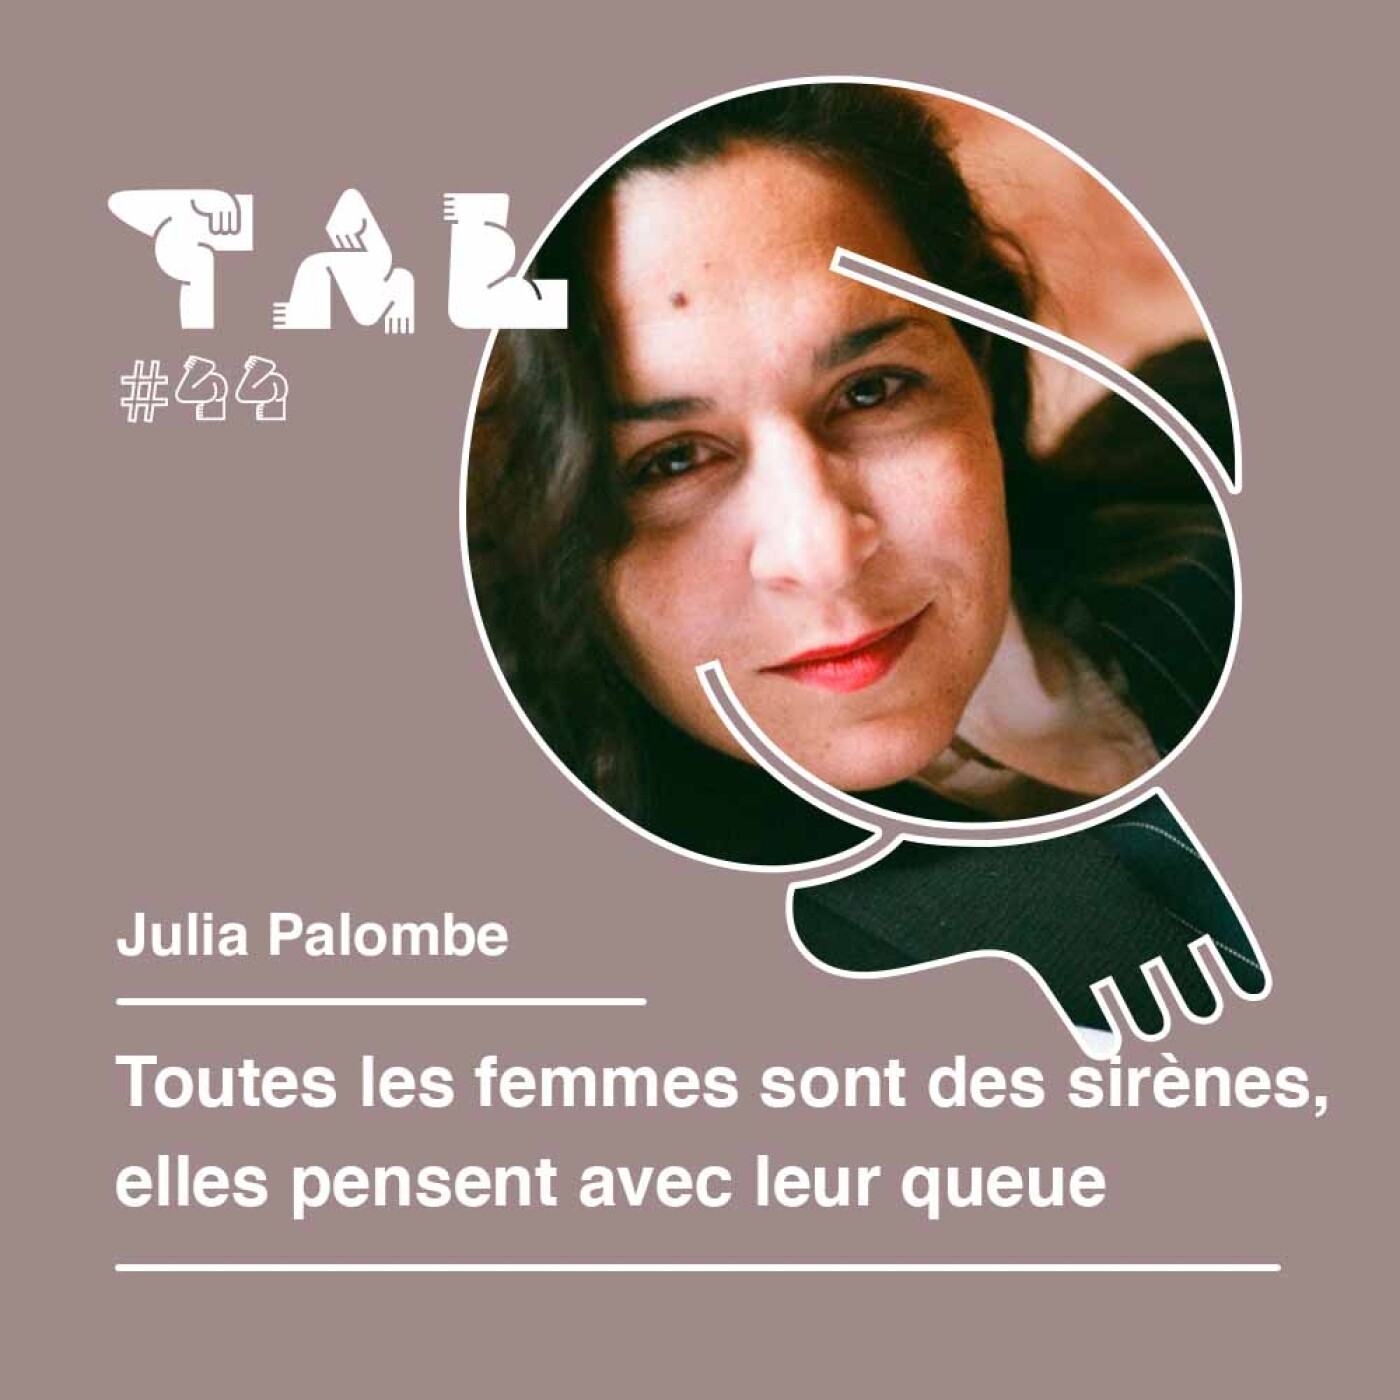 #44 - Julia Palombe : Toutes les femmes sont des sirènes, elles pensent avec leur queue - Replay Live Insta